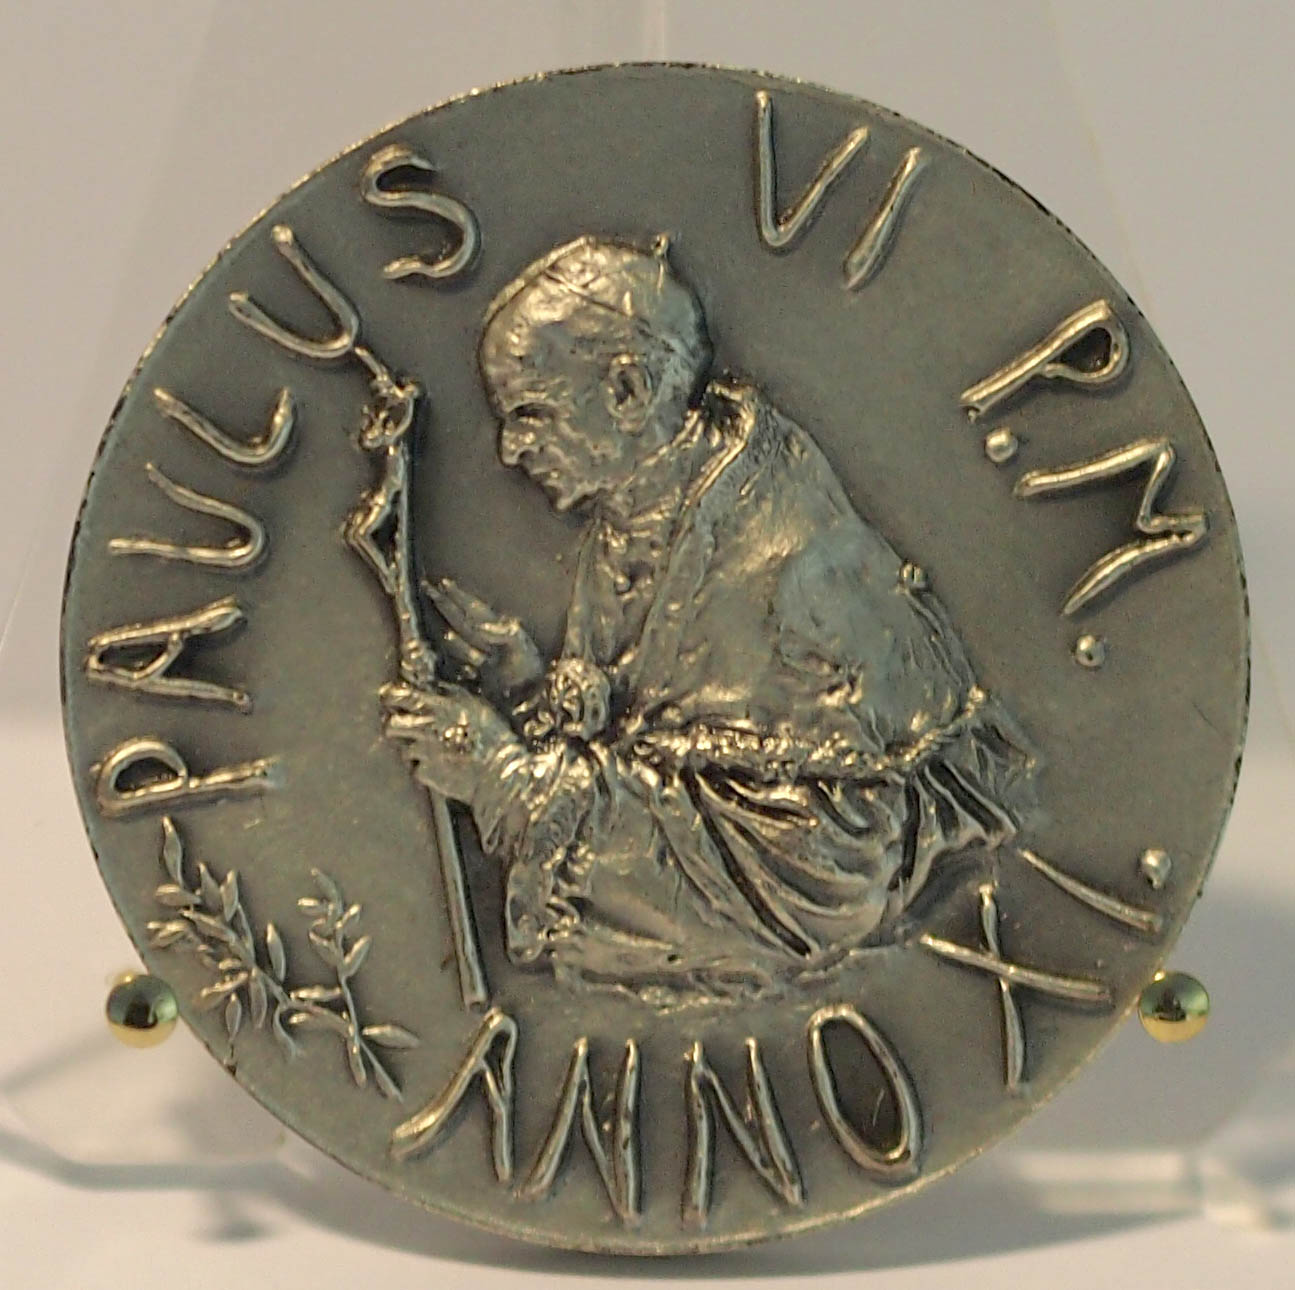 1973 Medaglia annuale di Paolo VI in Argento Anno XI di pontificato Fior di Conio